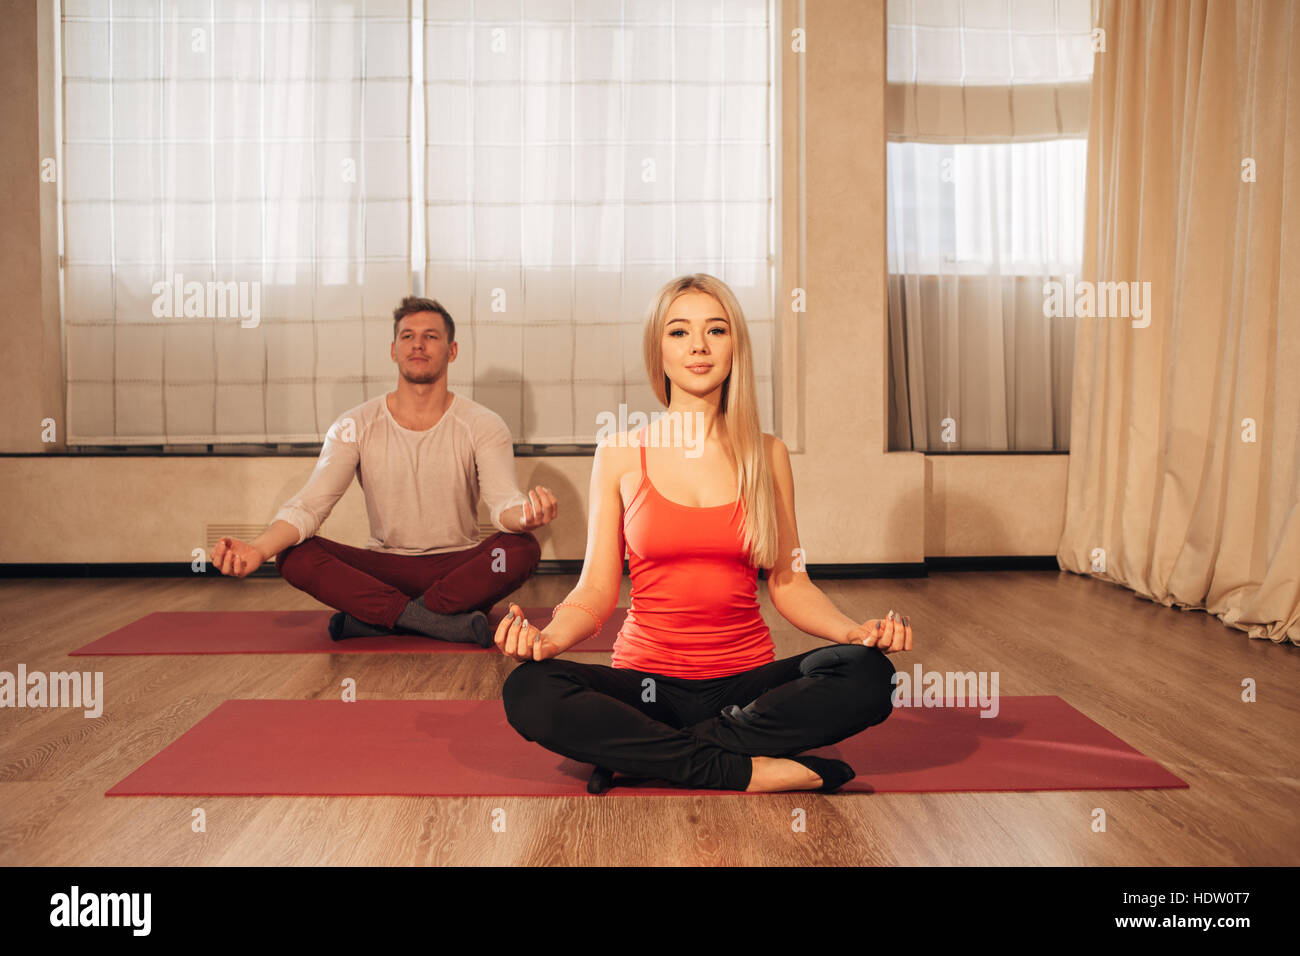 Hombre y mujer delgada sobre antecedentes meditando en pose de Lotus en el gimnasio Foto de stock